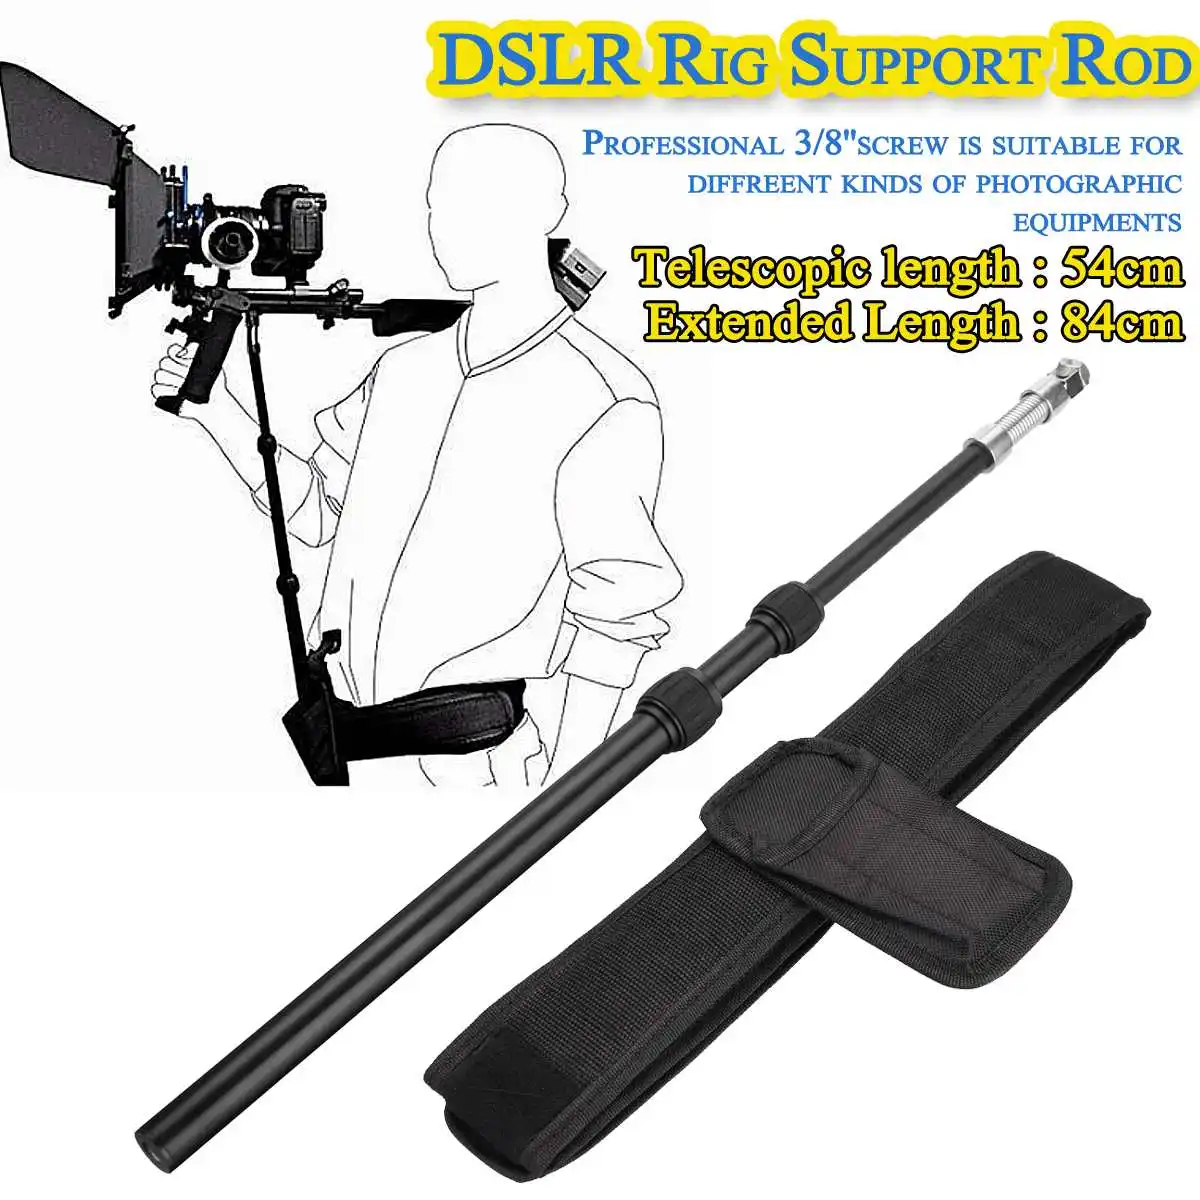 DSLR Rig Поддержка штанги/ремень подходит для крепления на плечо видеокамера камера DV/DSLR новые аксессуары для экшн-камеры